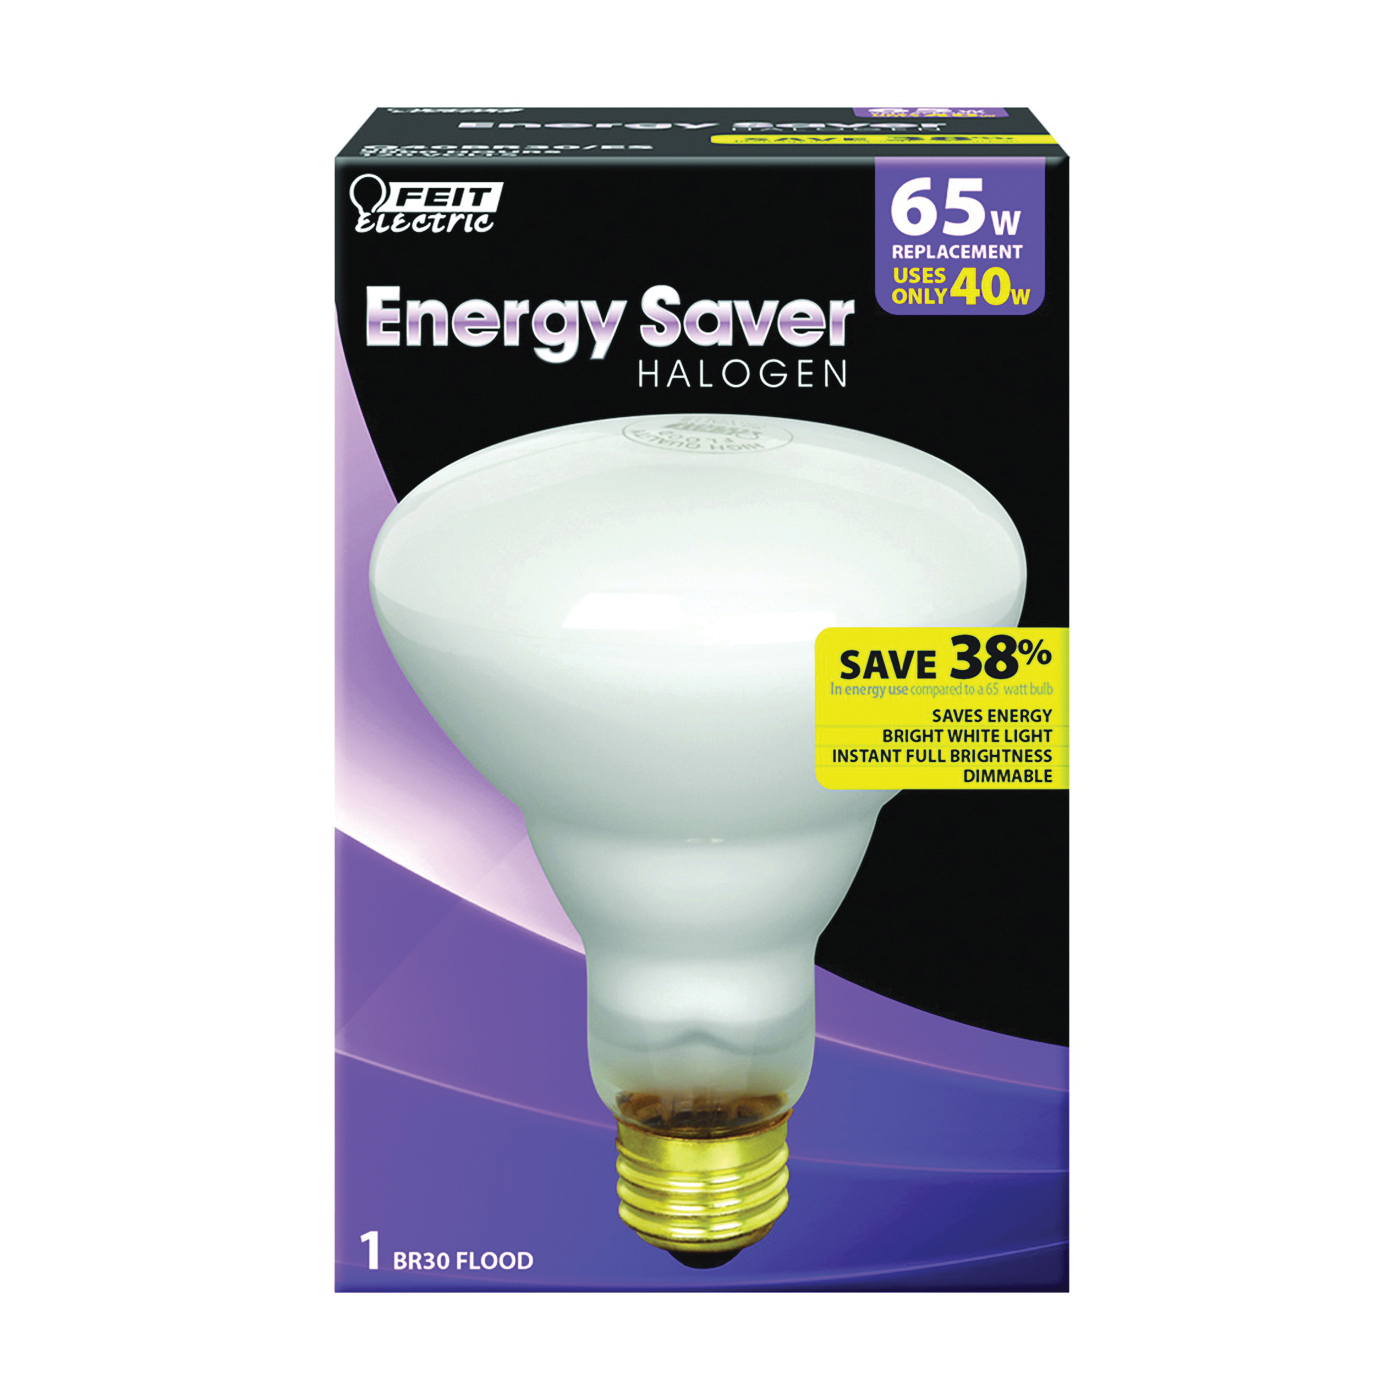 Q40BR30/ES Halogen Bulb, 40 W, Medium E26 Lamp Base, BR30 Lamp, 600 Lumens, 3000 K Color Temp